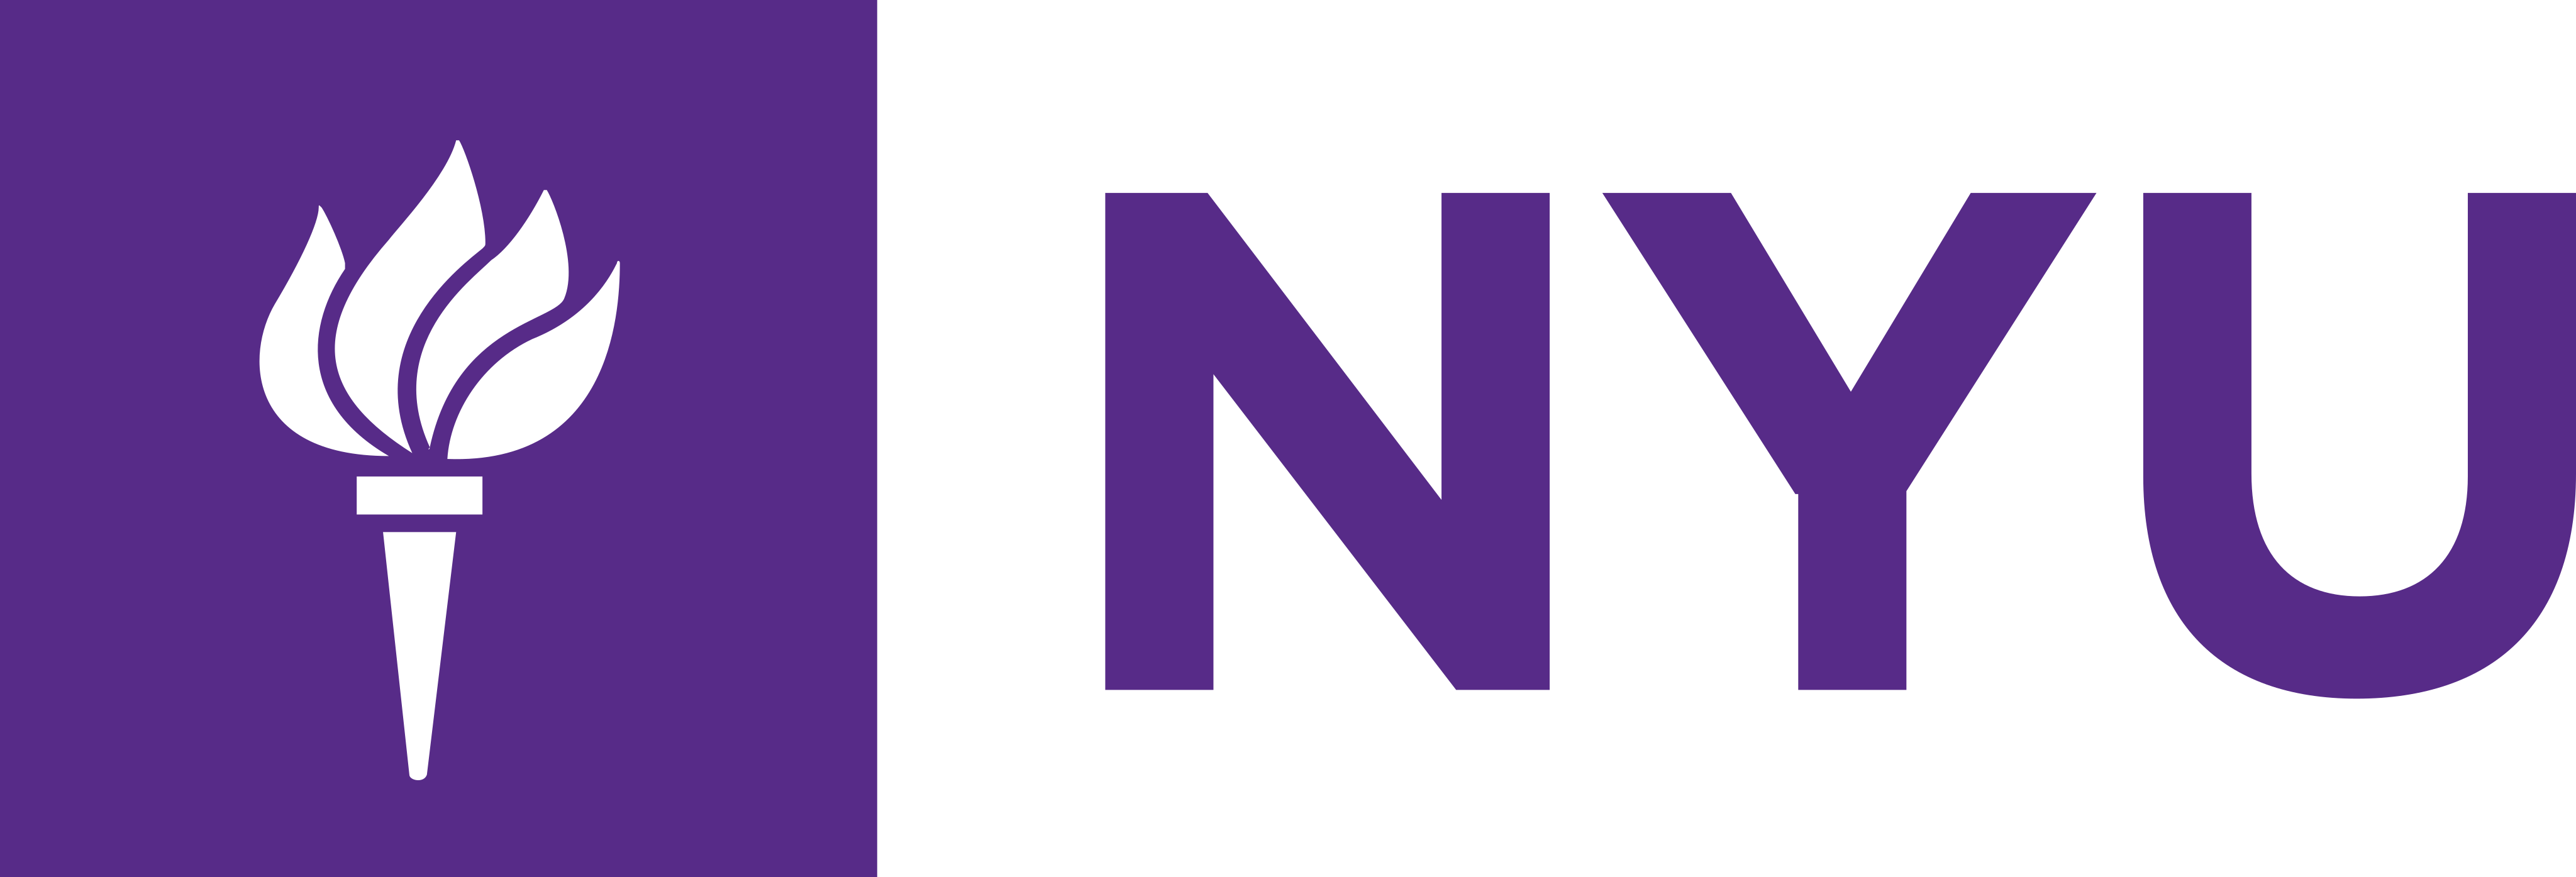 Logotipo de la Universidad de Nueva York – Logotipo de la Universidad de Nueva York - PNG y Vector - Descarga de logotipo